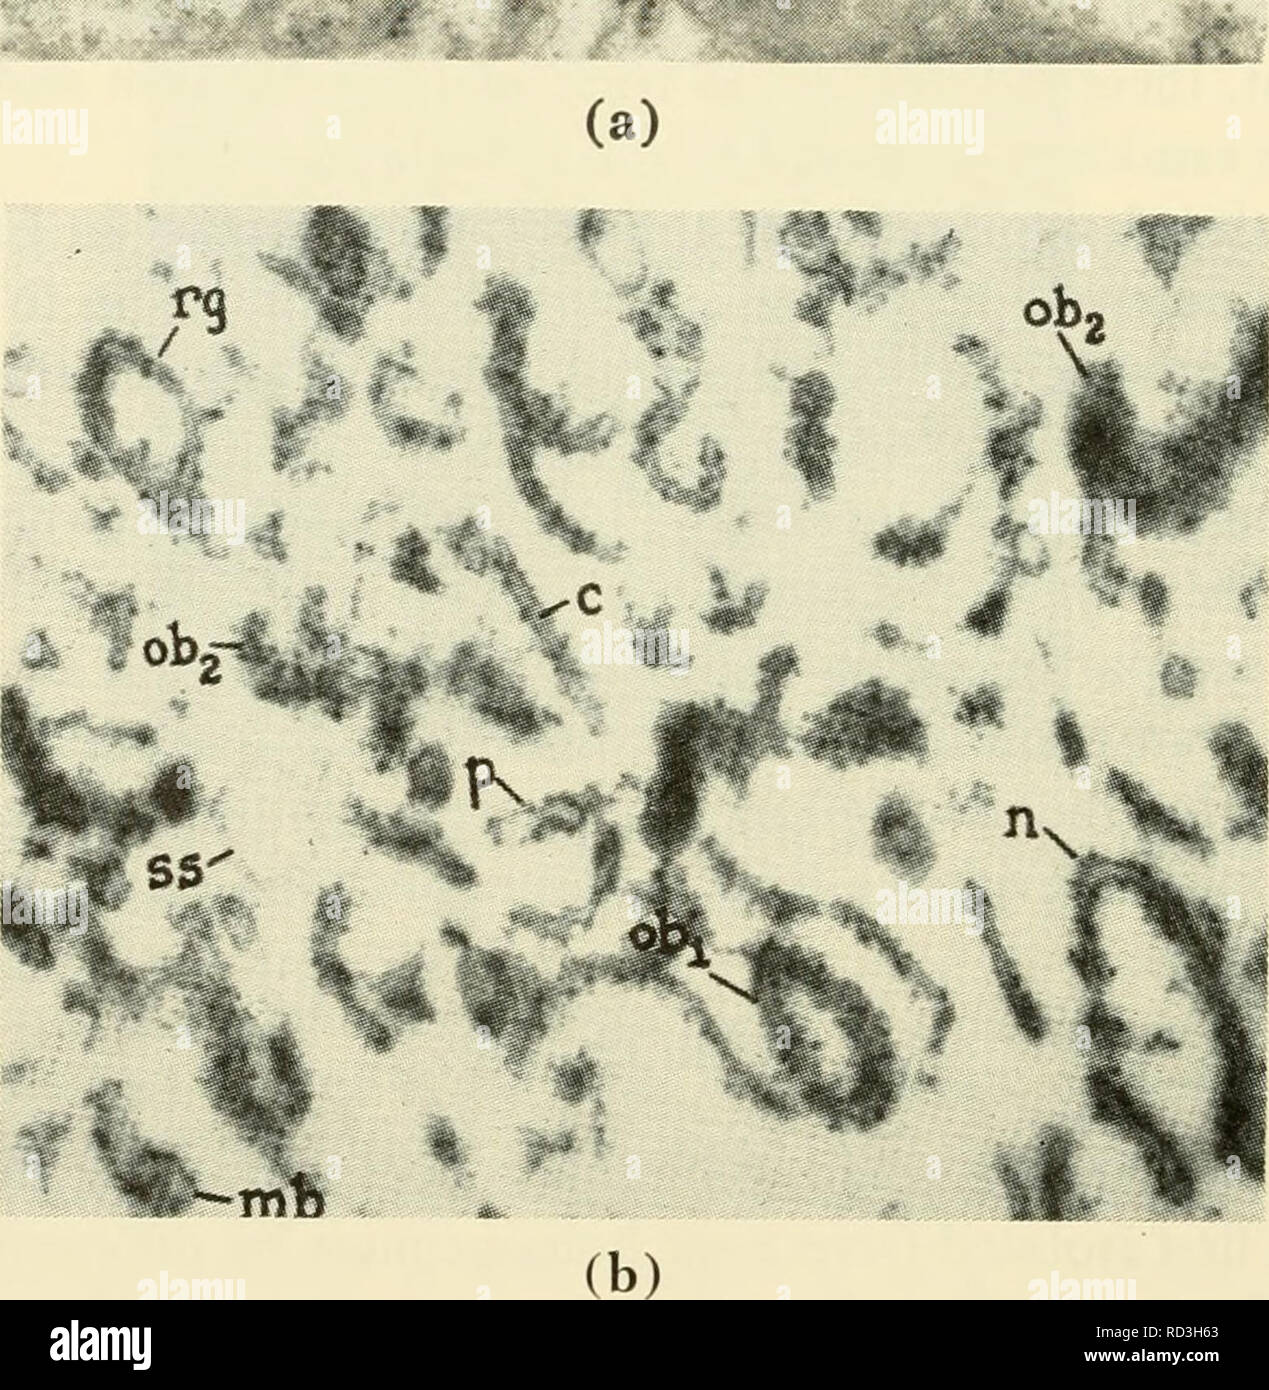 . Zytologie. Zytologie. m.. Abbildung 3-26. (A) Electron Micrograph von kleinen Teil des Zytoplasma der Parenchymatous Leberzelle, zeigt Array von neun längliche Profile (e^, EG) der rauen - beschichtete Sorte, die in drei Dimensionen entspricht einem Haufen bevorzugt orientierten cisternae. Zahlreiche kleine Partikel mit hoher Elektronendichte (kleine Granulat der Firma Pylos, Ribosomen) sind auf der äußeren Oberfläche der Membran eingehängten Begrenzung der cisternae. Ähnliche Partikel frei in den dazwischenliegenden Zytoplasma verteilt. Profile der fünf Mito - chondria (m) sind ebenfalls sichtbar, (b) Elektron Microgra Stockfoto